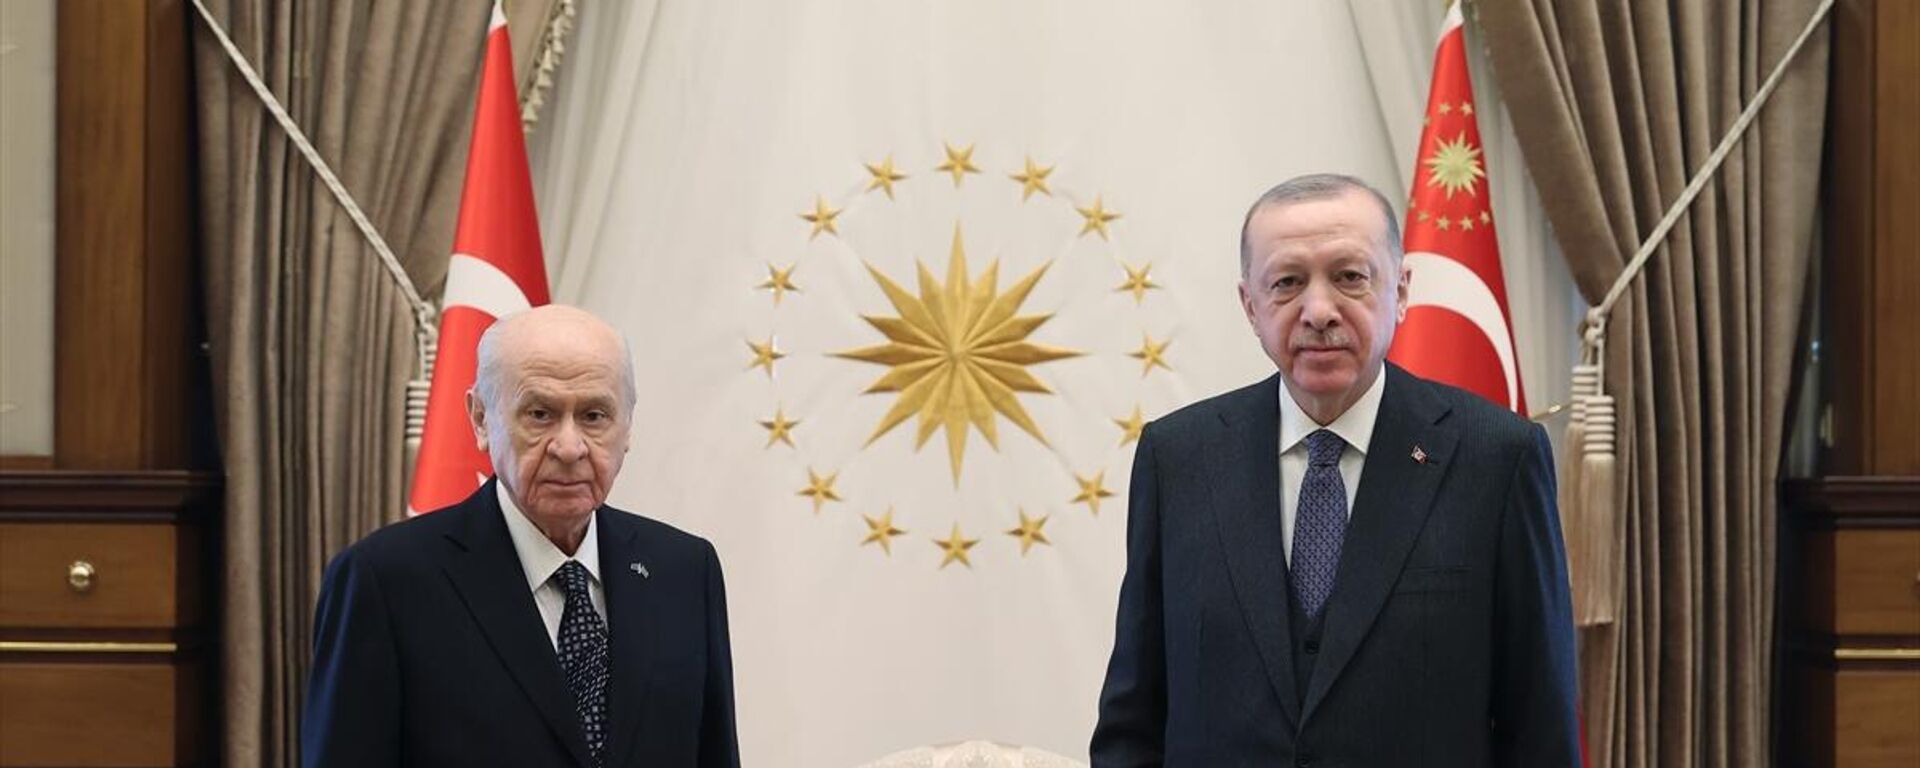 Cumhurbaşkanı Erdoğan, MHP Genel Başkanı Bahçeli ile görüşüyor - Sputnik Türkiye, 1920, 20.03.2023